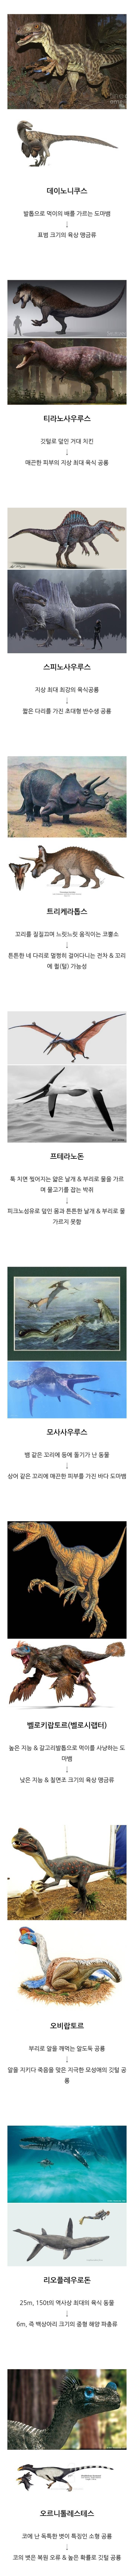 옛날 복원한 공룡과 최근 복원한 공룡 비교.jpg (공룡) | 인스티즈